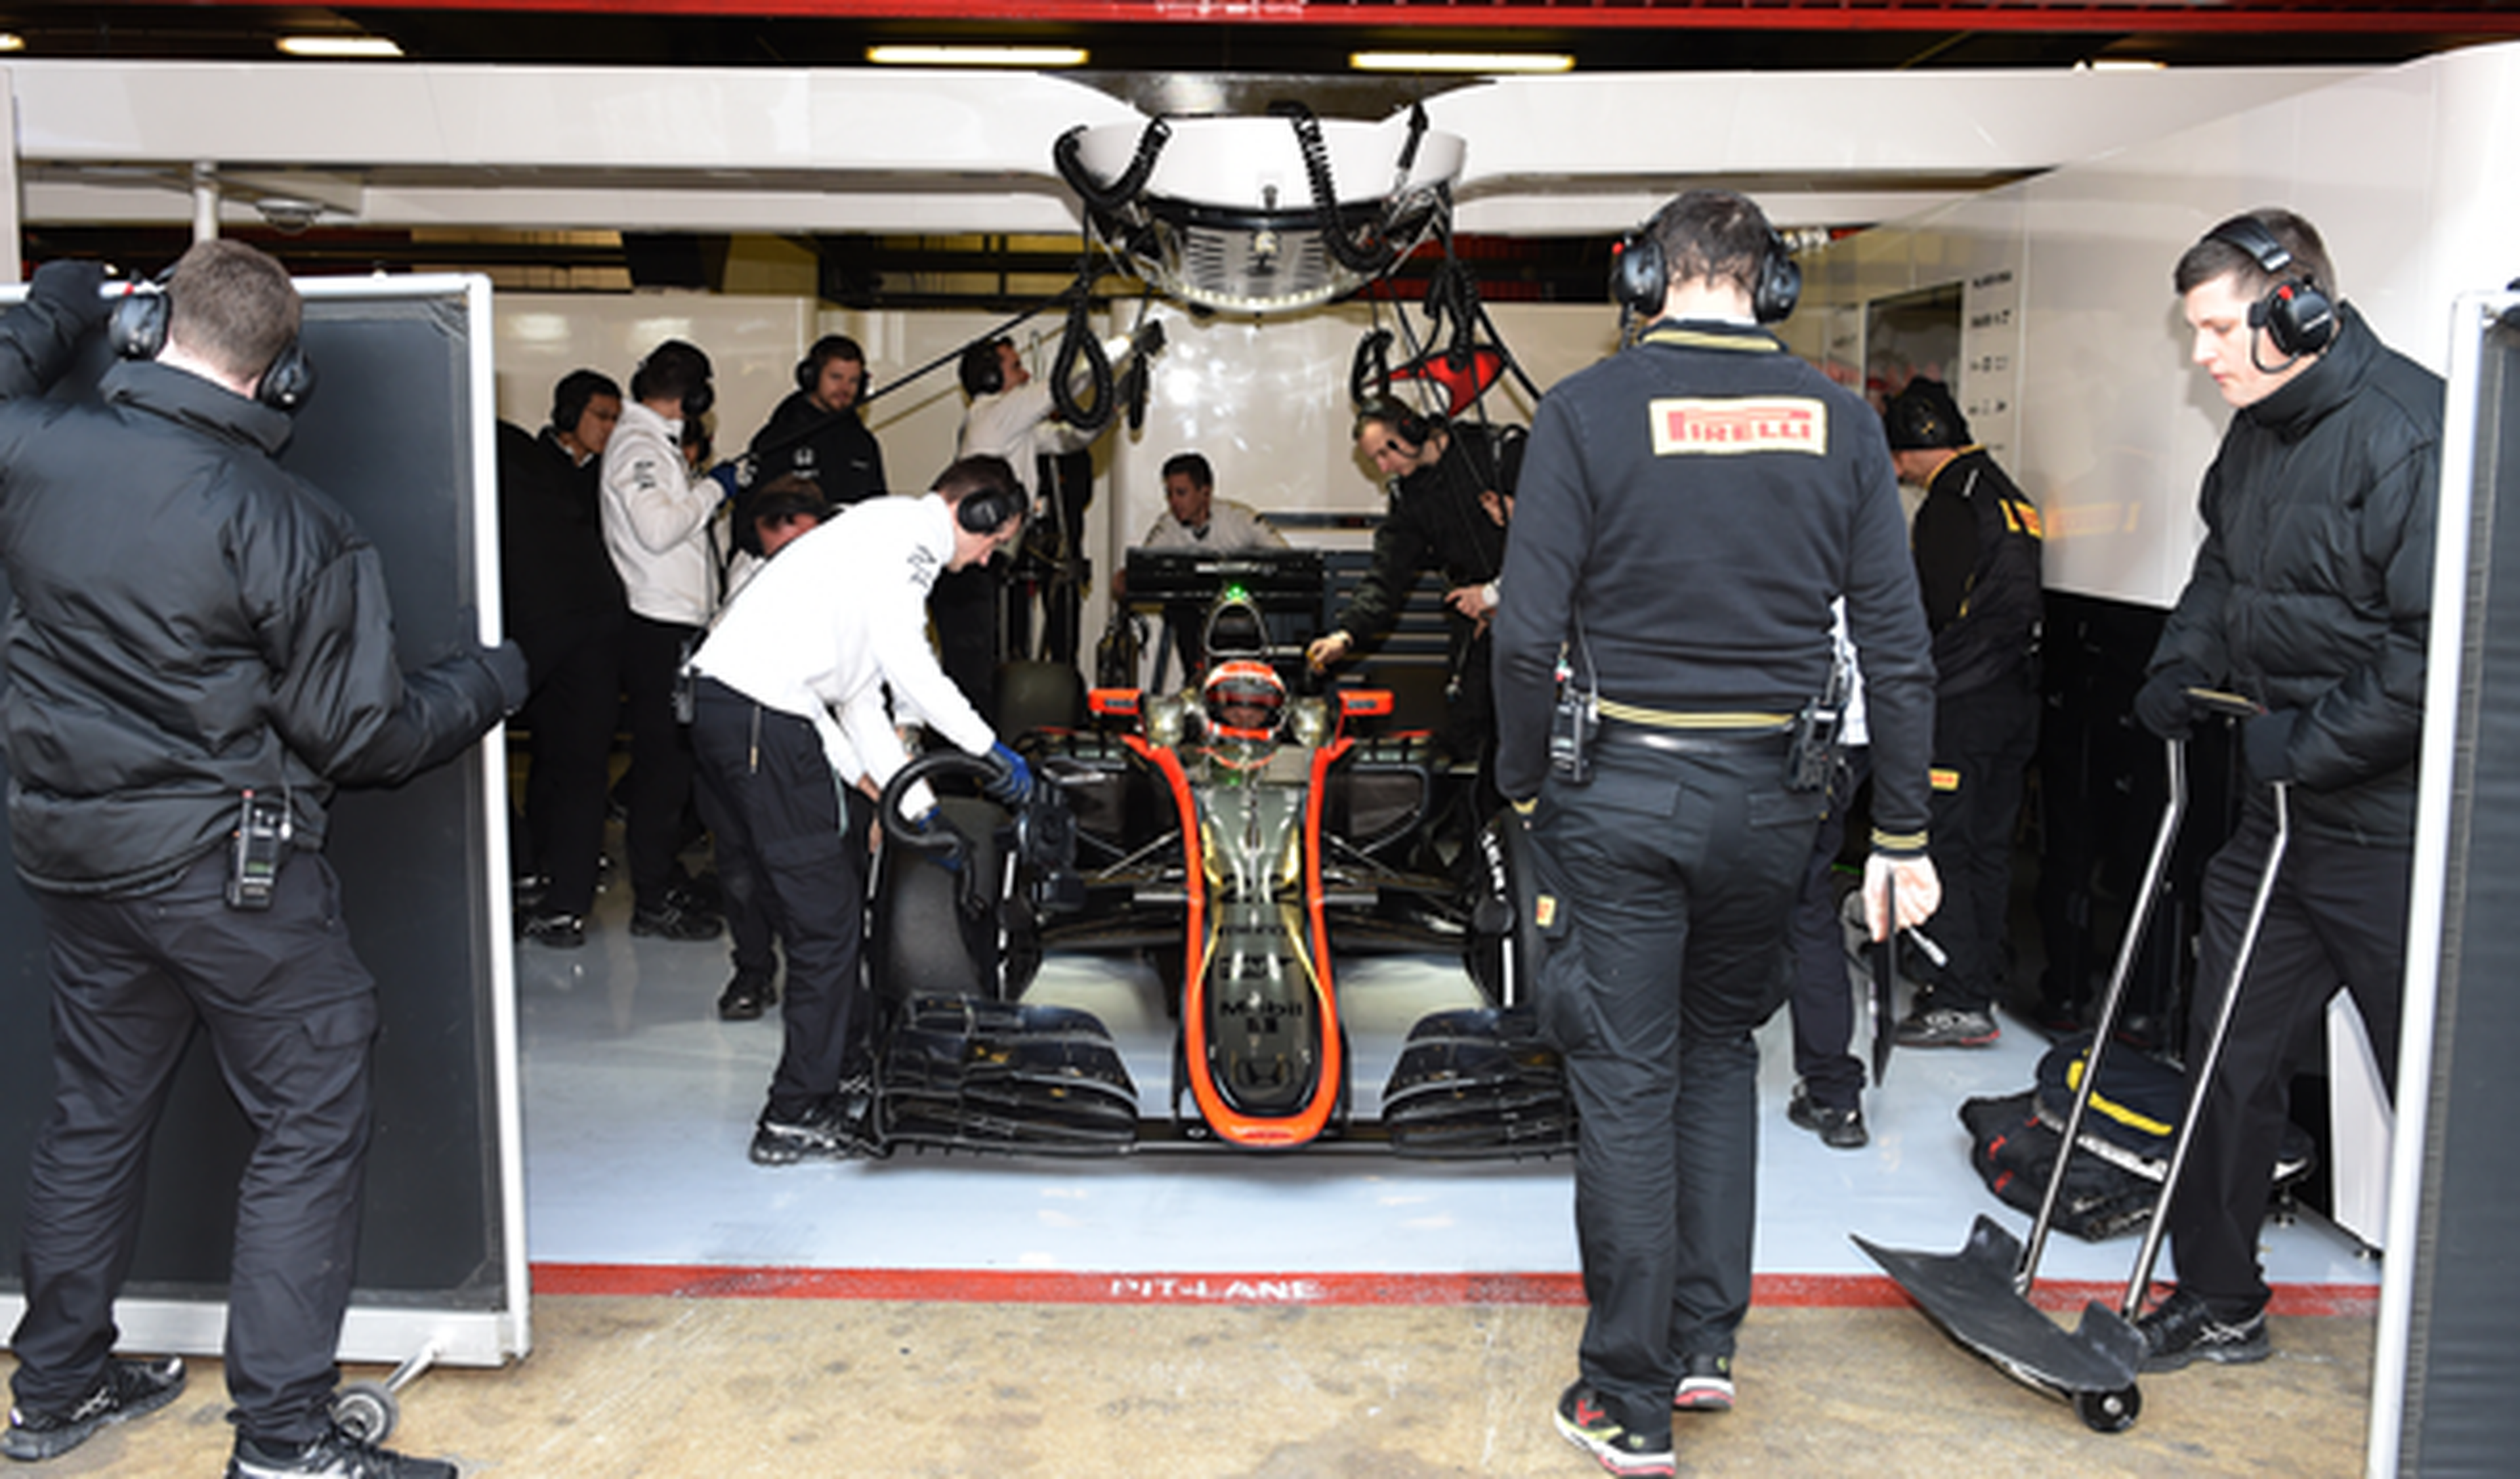 Continúan los problemas de fiabilidad en el McLaren MP4-30